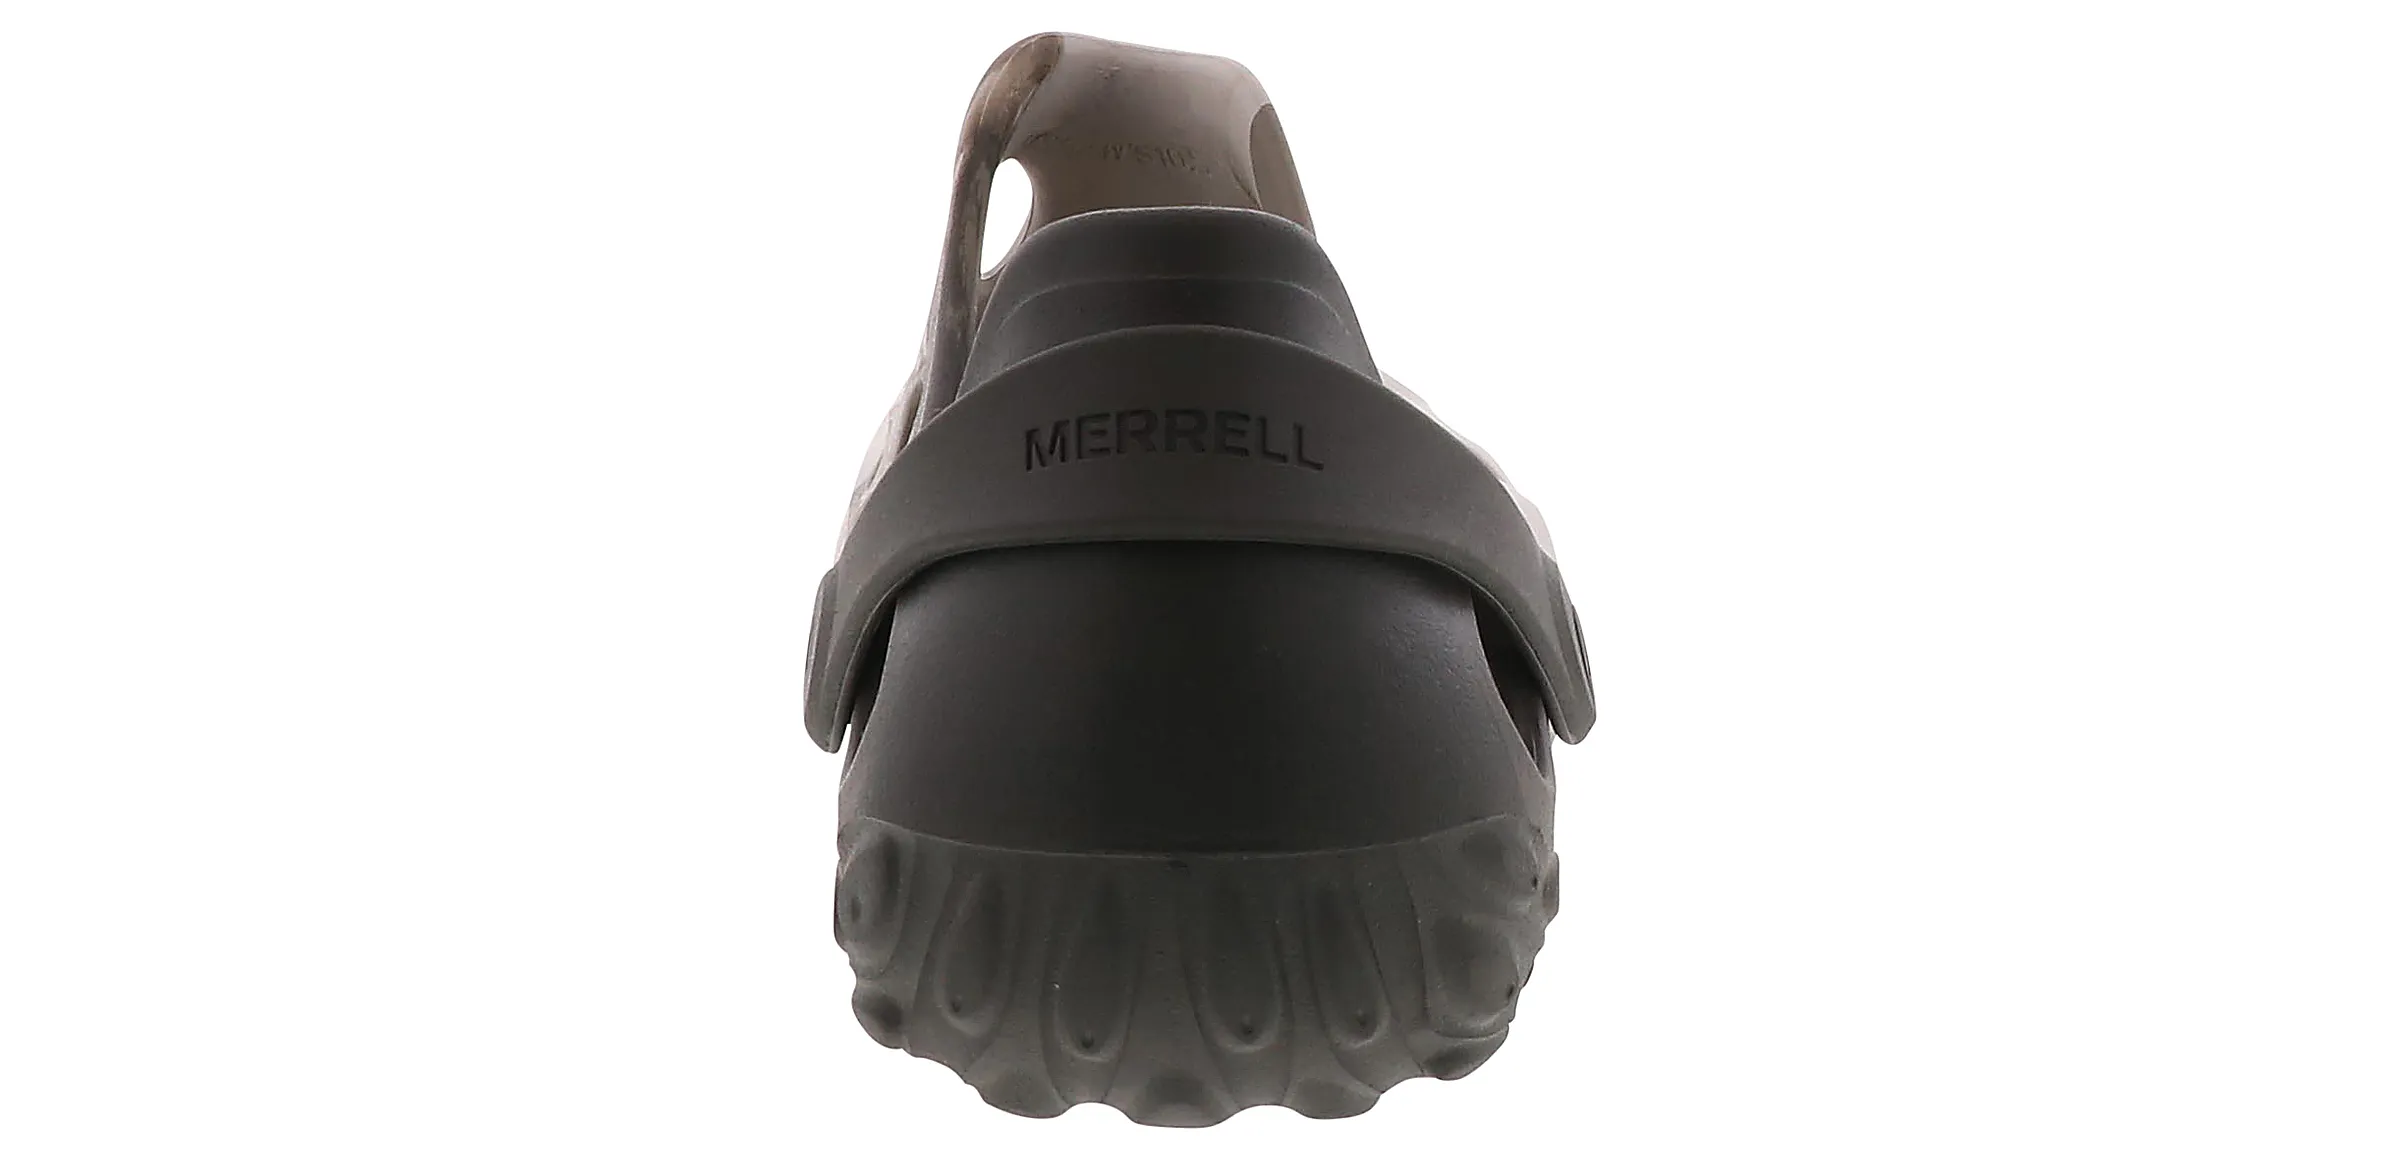 merrell-j004121-hydromocdrift-black03